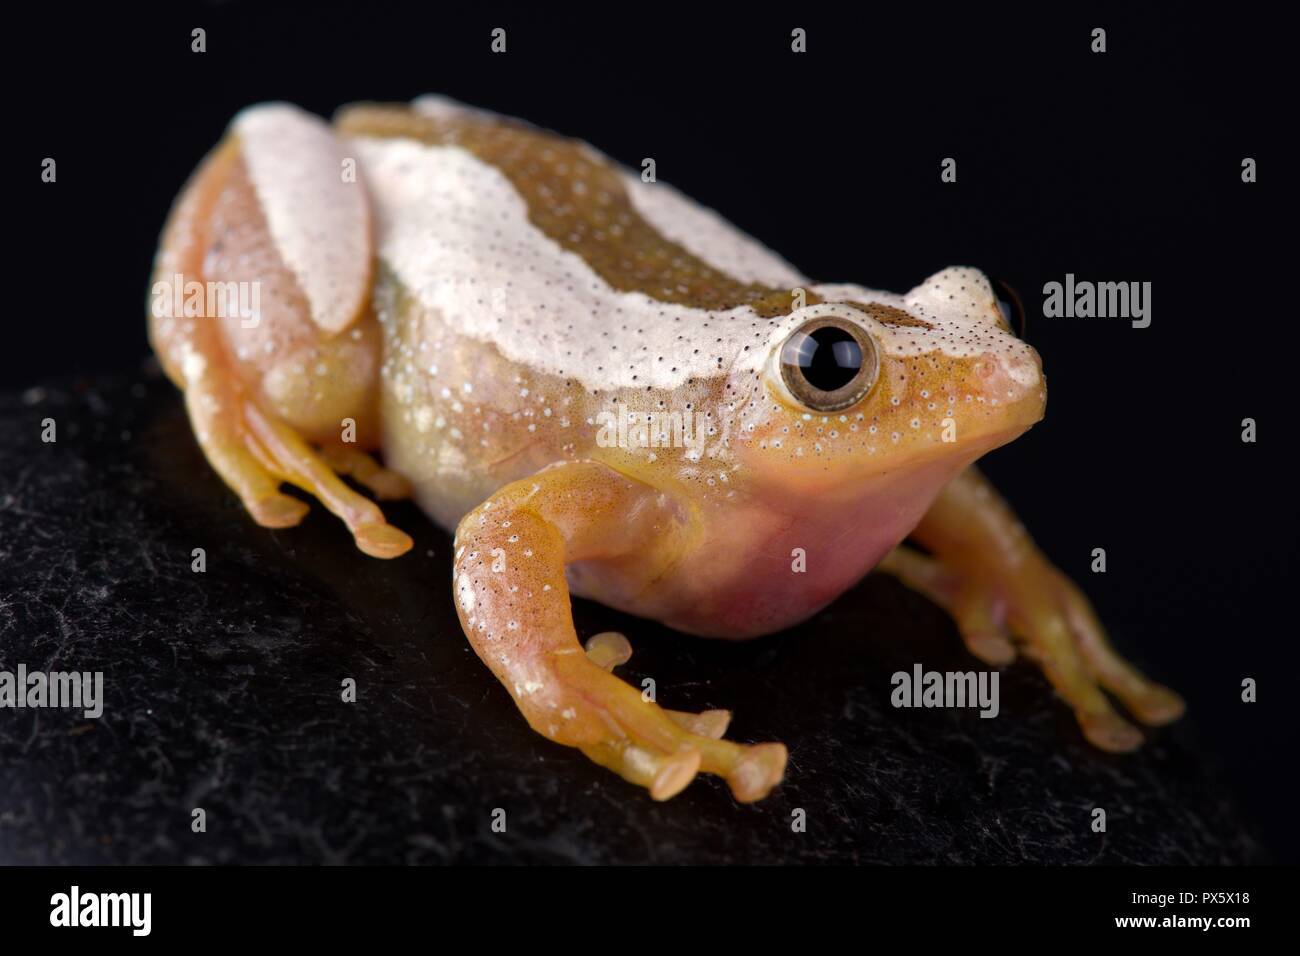 Greater leaf-folding frog (Afrixalus fornasini) Stock Photo